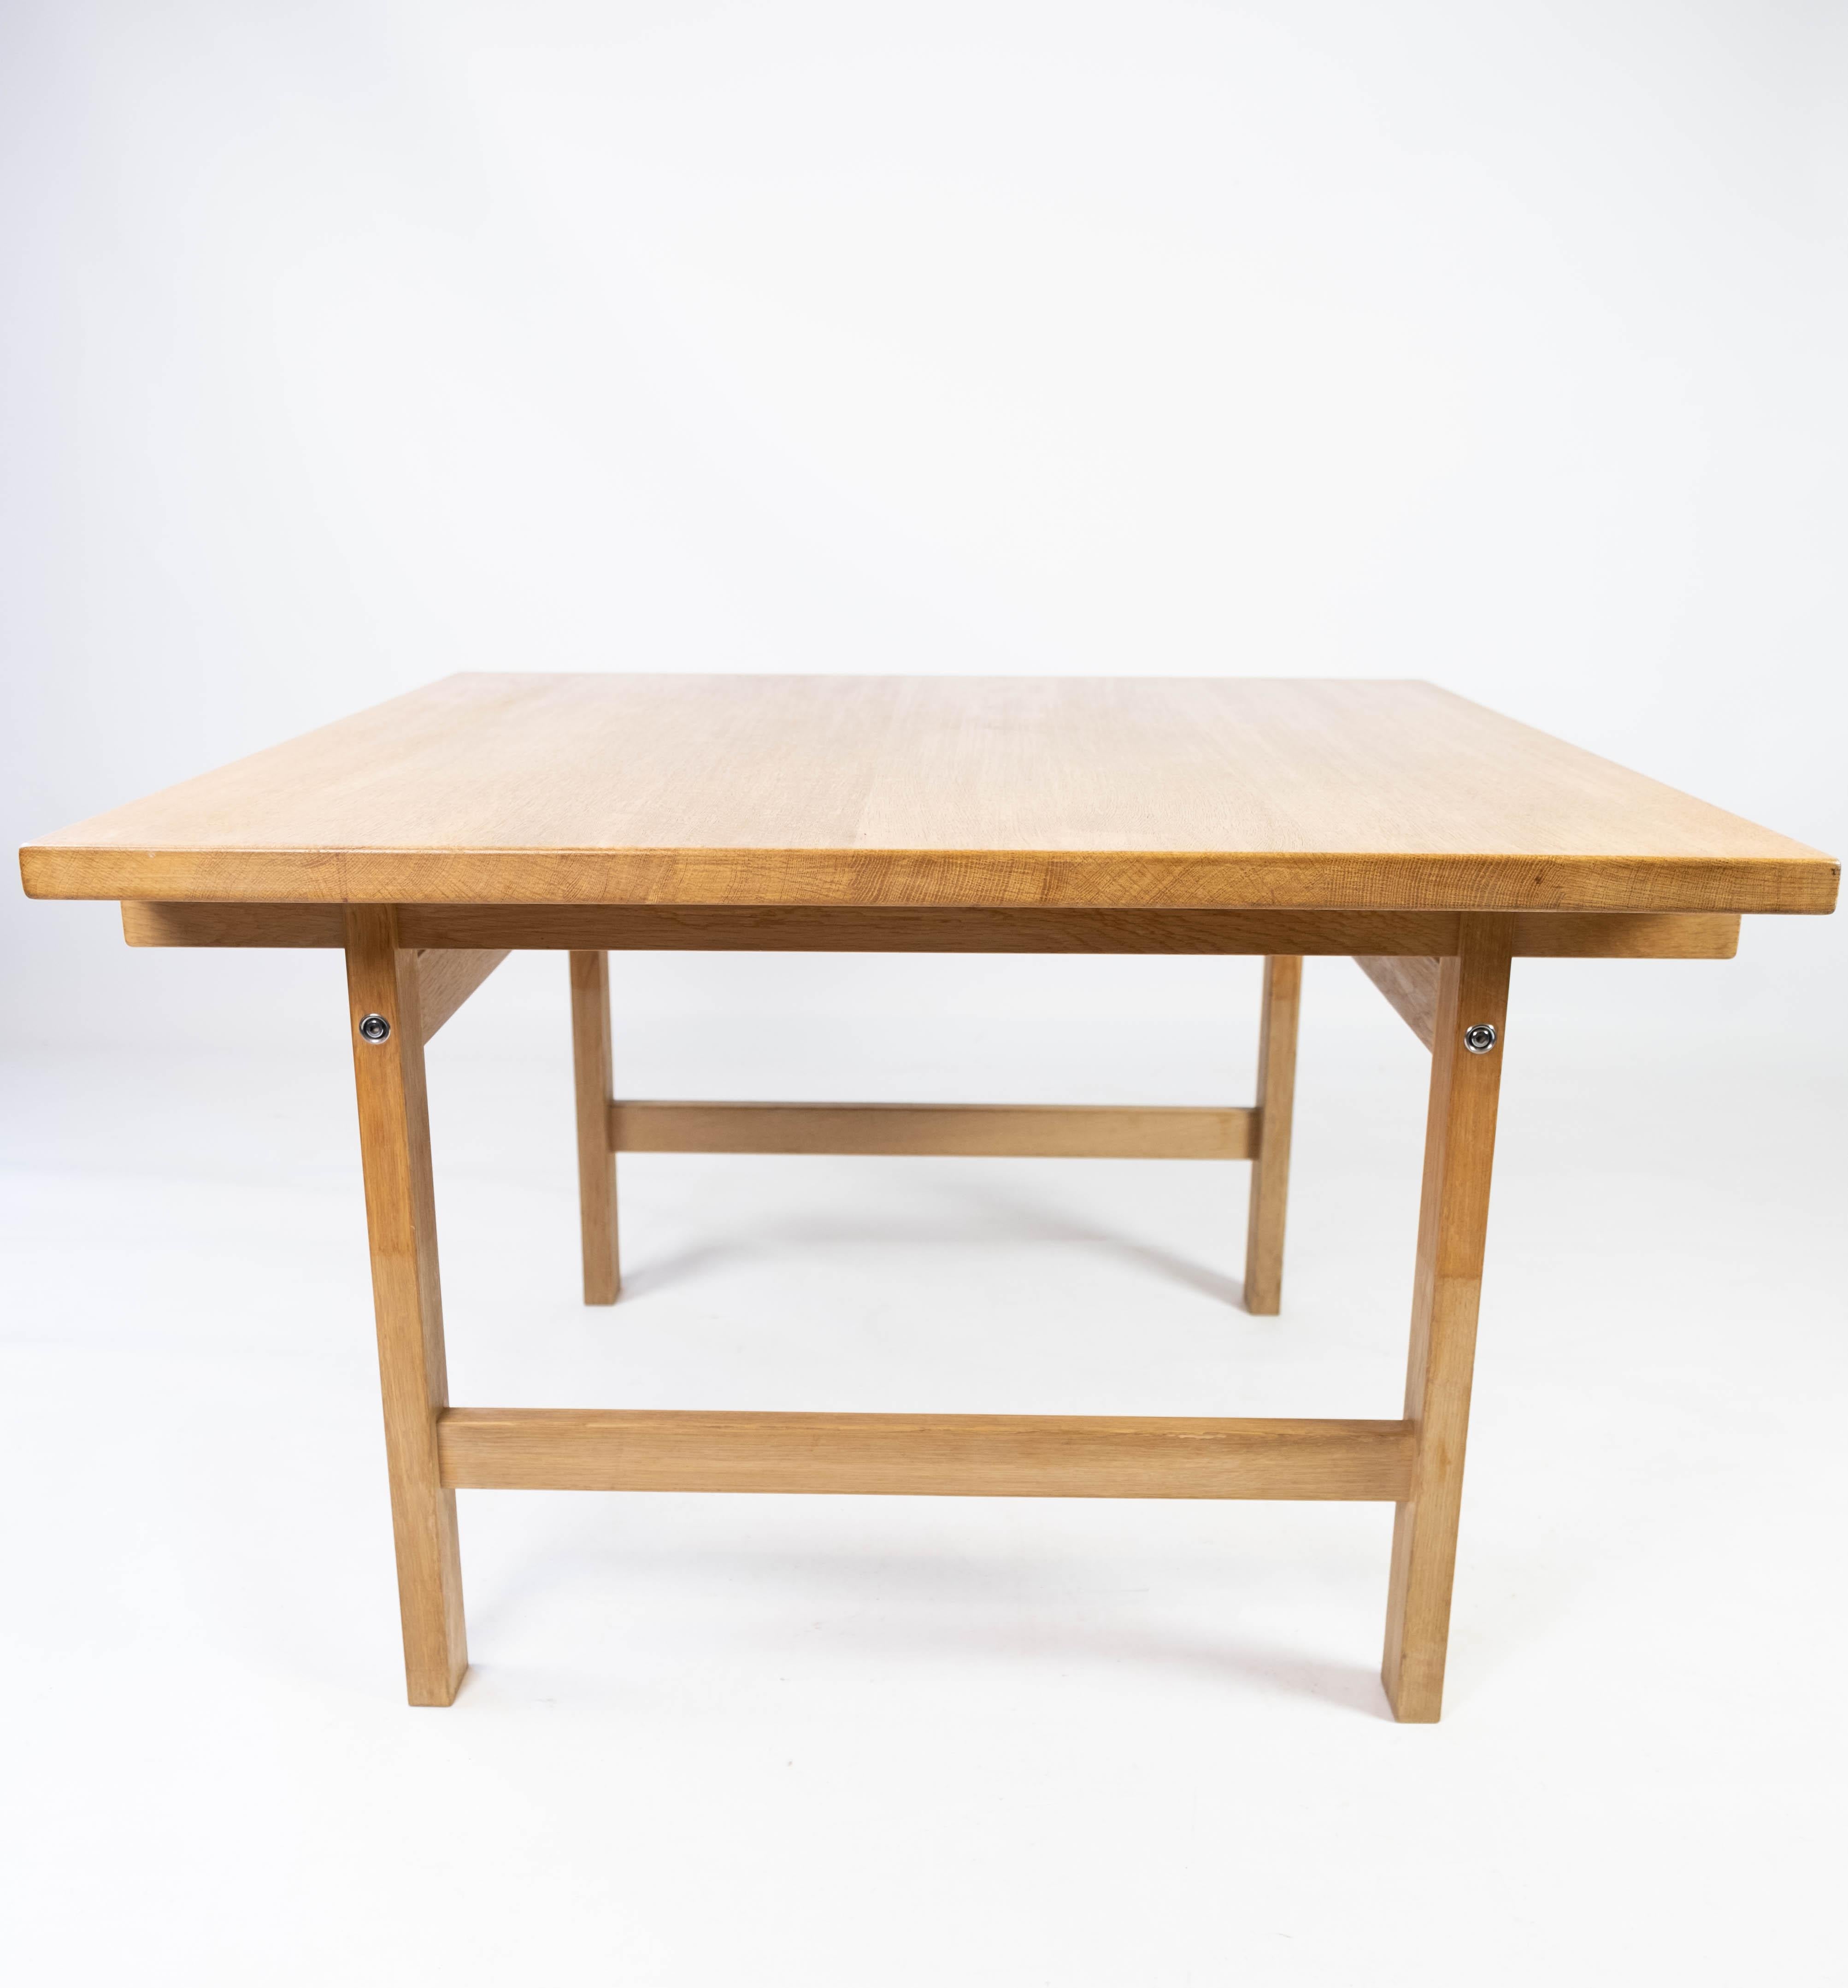 Cette table basse en chêne, conçue par Hans J. Wegner et fabriquée par PP Møbler dans les années 1960, incarne l'excellence du design danois. Caractérisé par des lignes épurées et des formes organiques, il allie harmonieusement fonctionnalité et